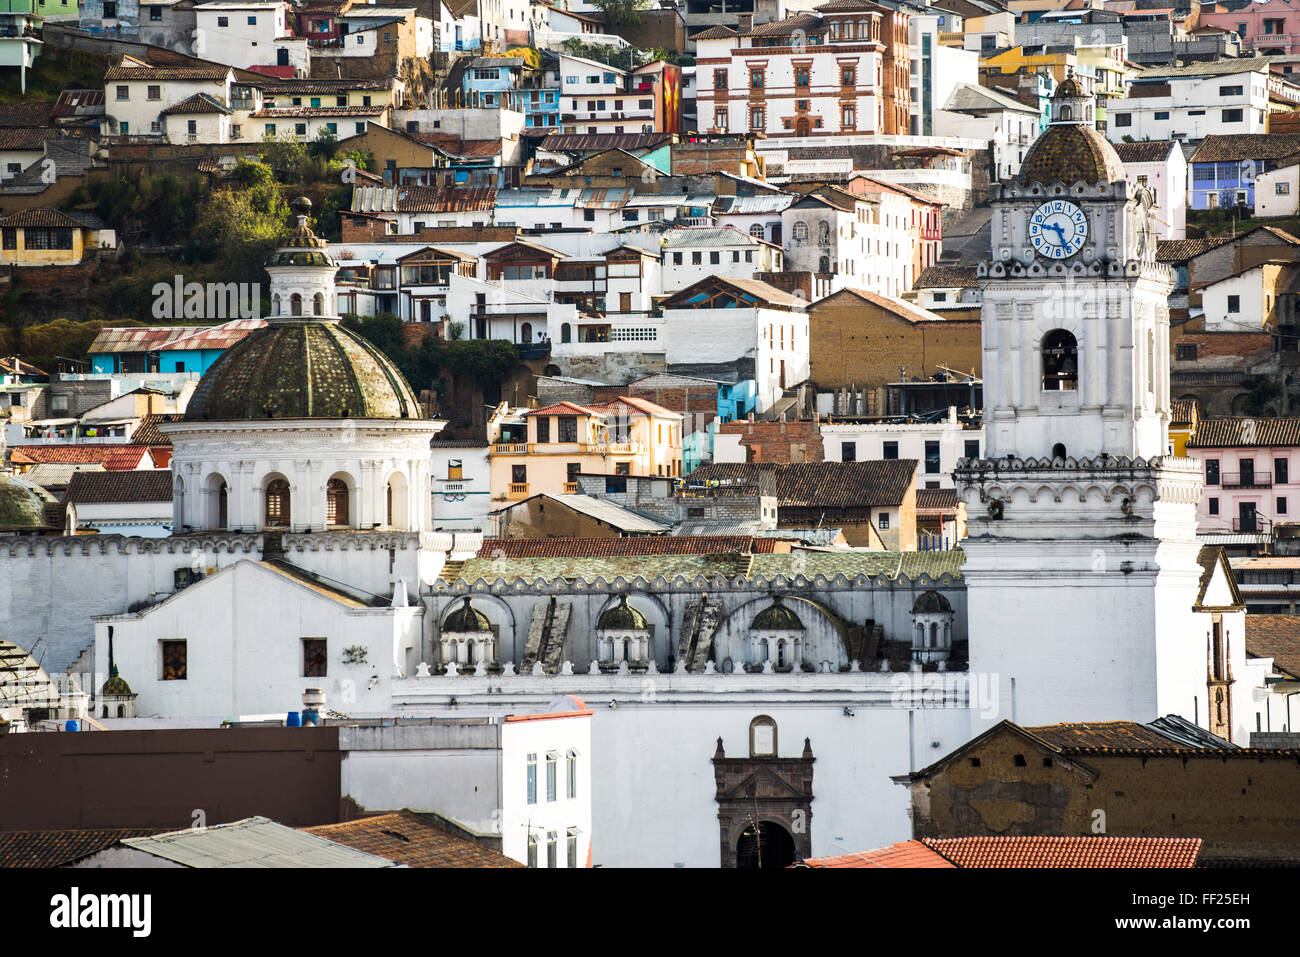 ArchitecturaRM DetaiRMs an die ORMd Stadt von Quito, UNESCO WorRMd Heritage Site, Ecuador, Südamerika Stockfoto